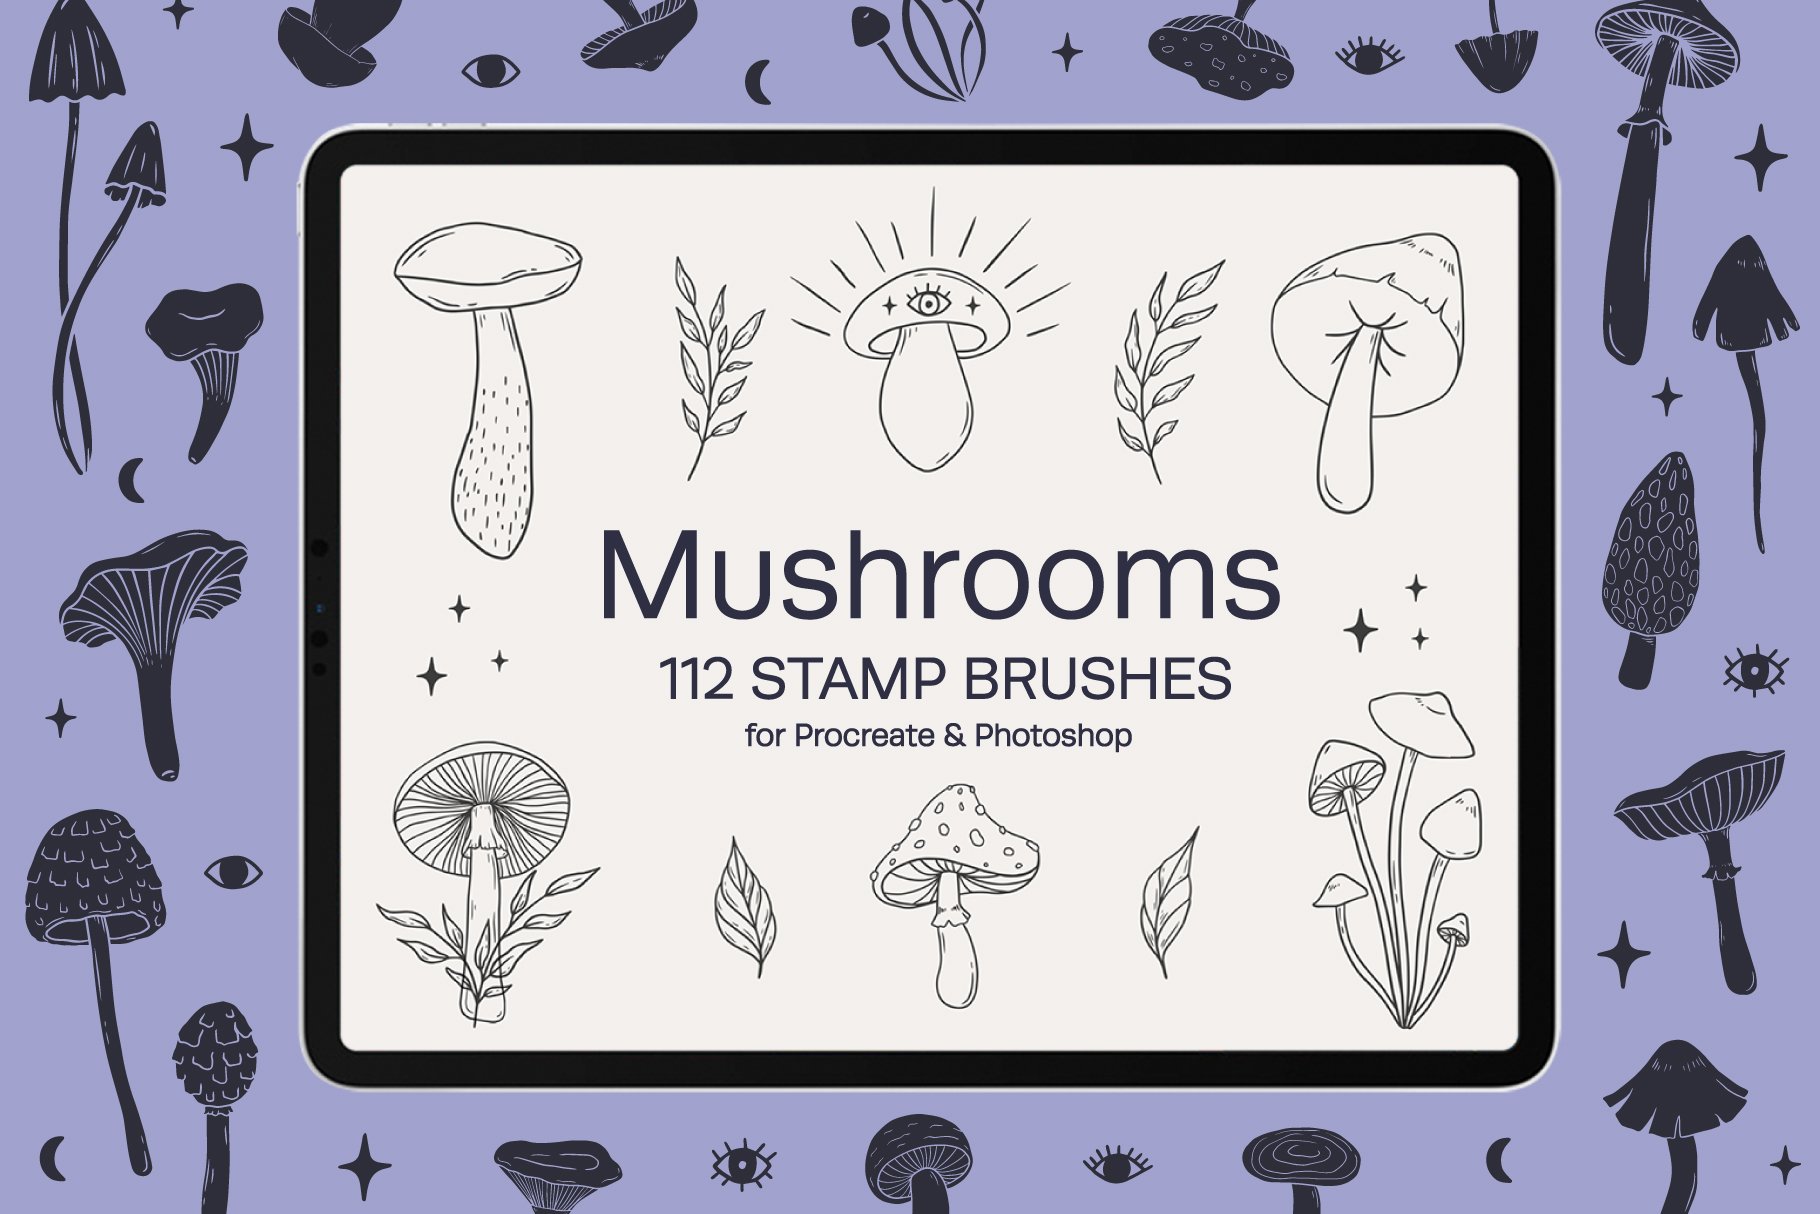 Mushrooms Procreate Stamp Brushescover image.